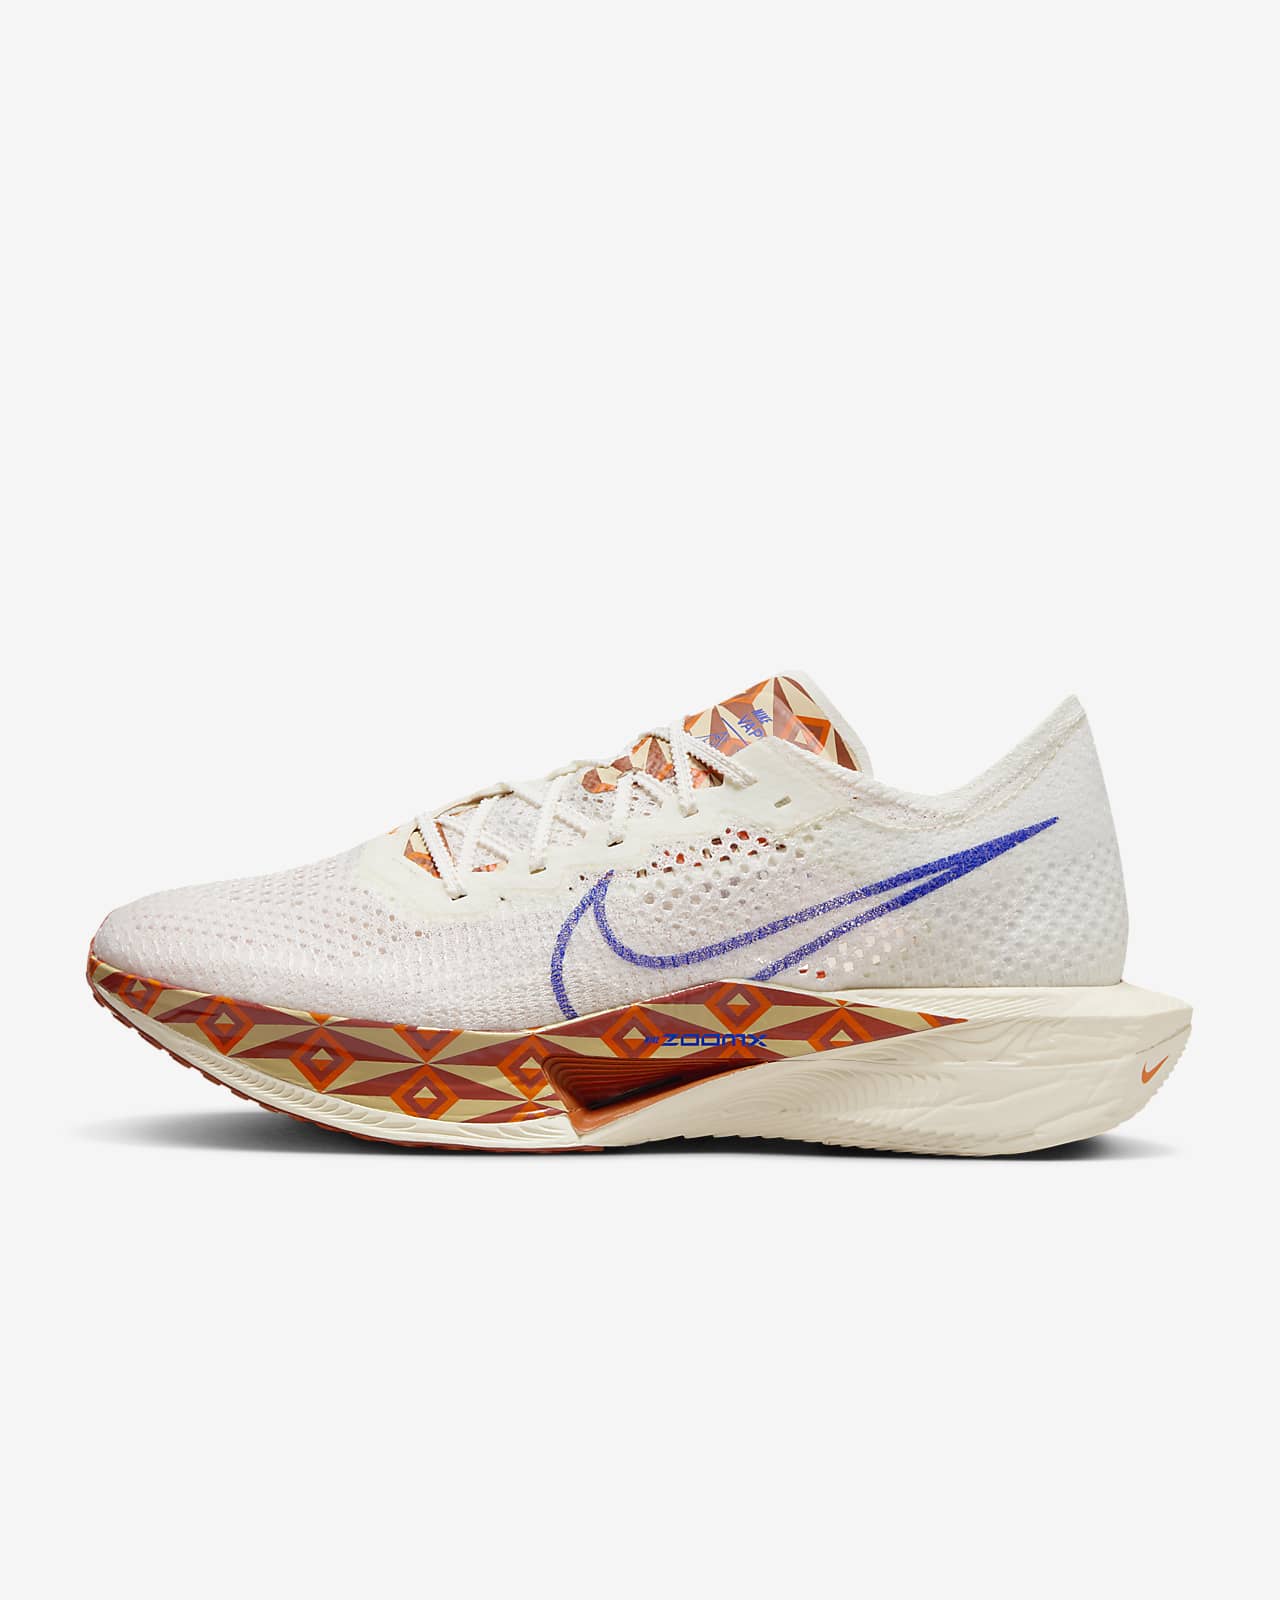 Nike Vaporfly 3 Premium Erkek Yol Yarış Ayakkabısı